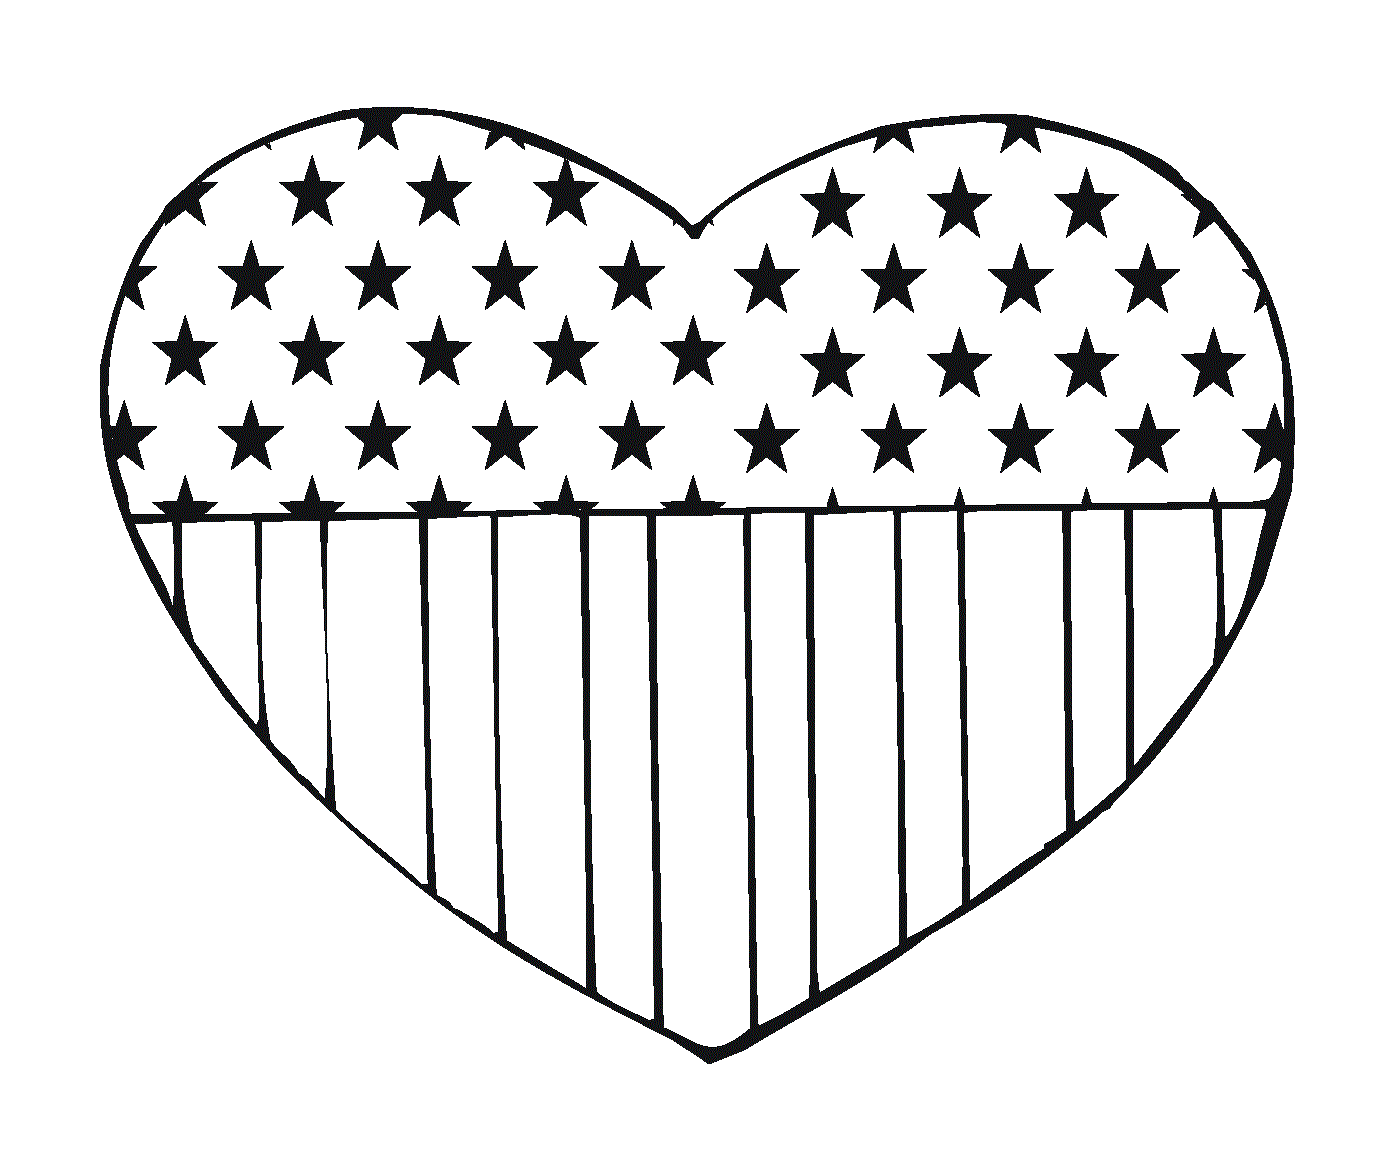  Coração com a bandeira dos Estados Unidos 